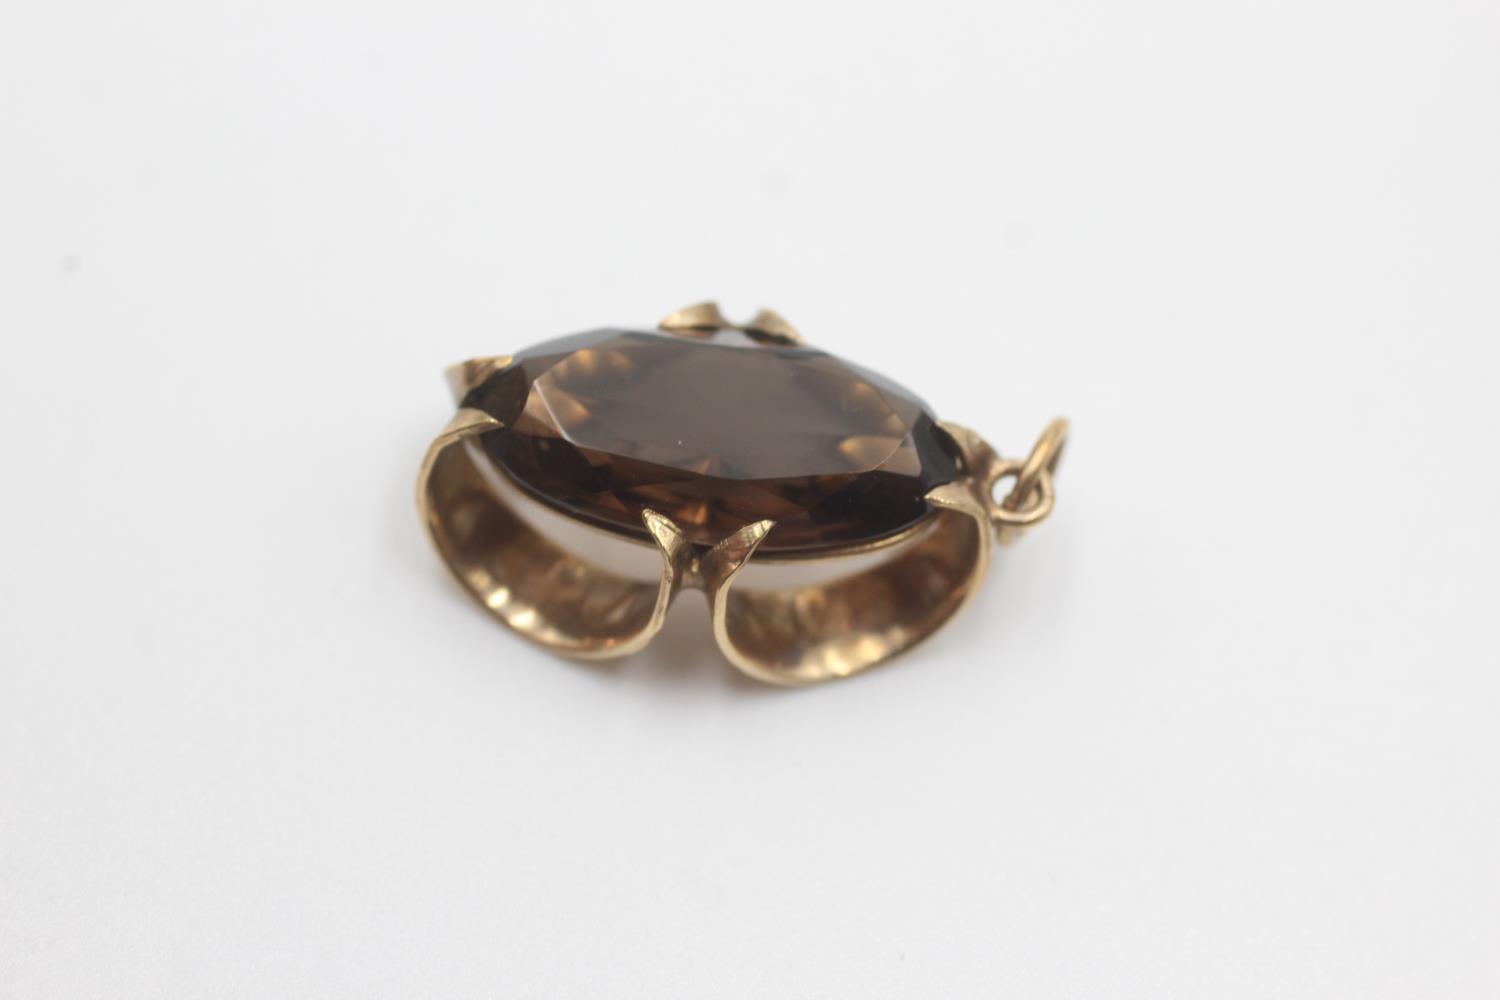 9ct gold smokey quartz stylised pendant (2.9g) - Image 2 of 4